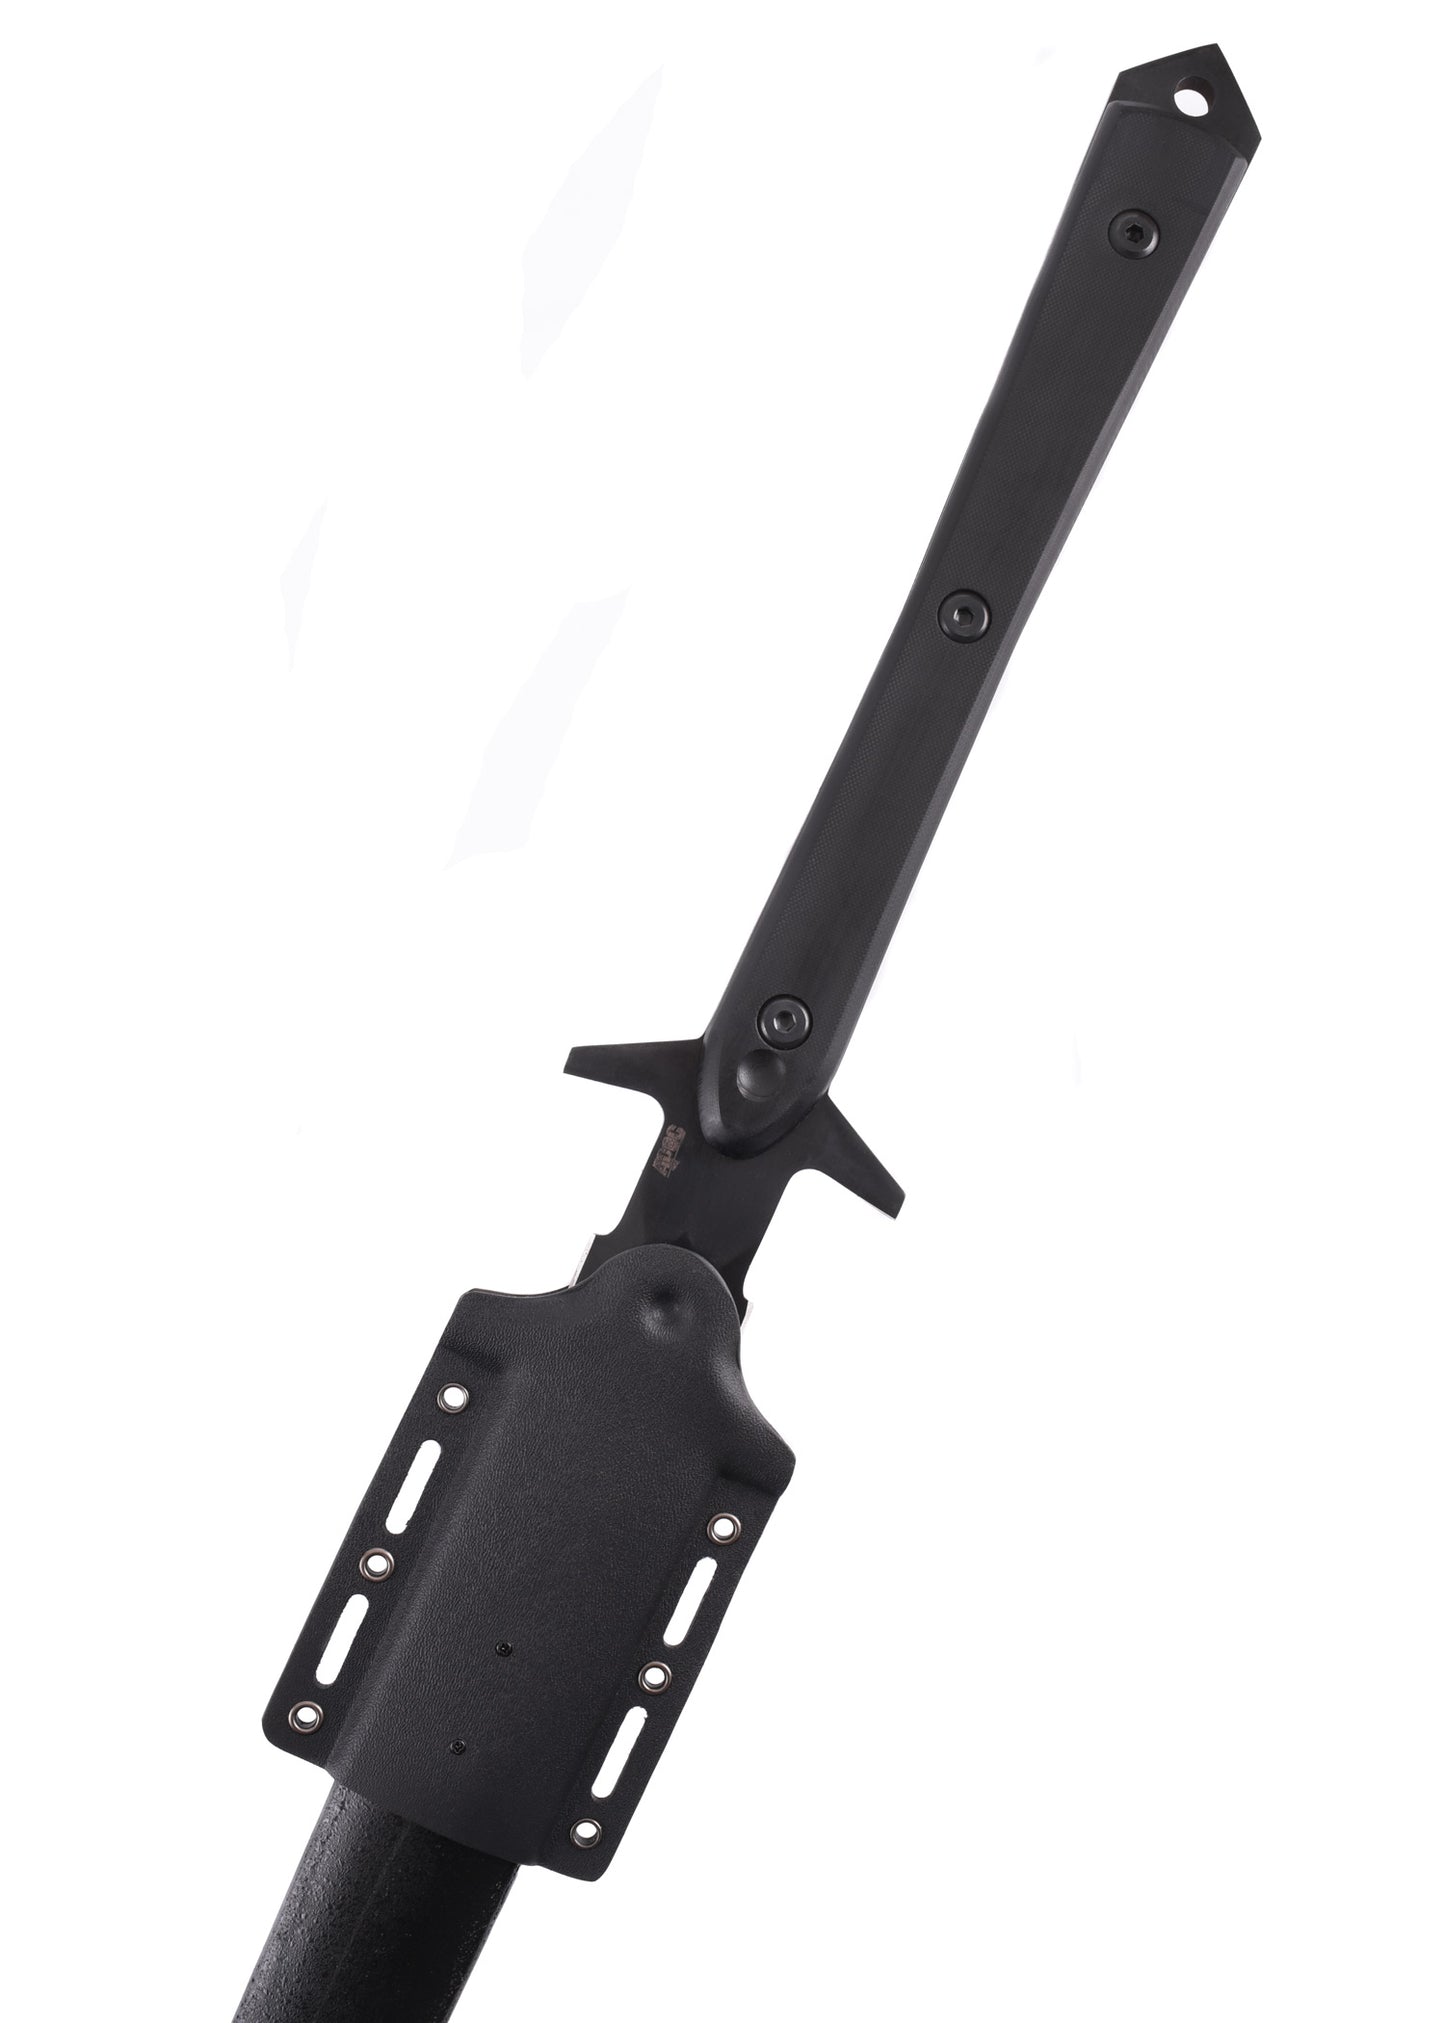 Longue épée de survie - APOC-T.A DEFENSE